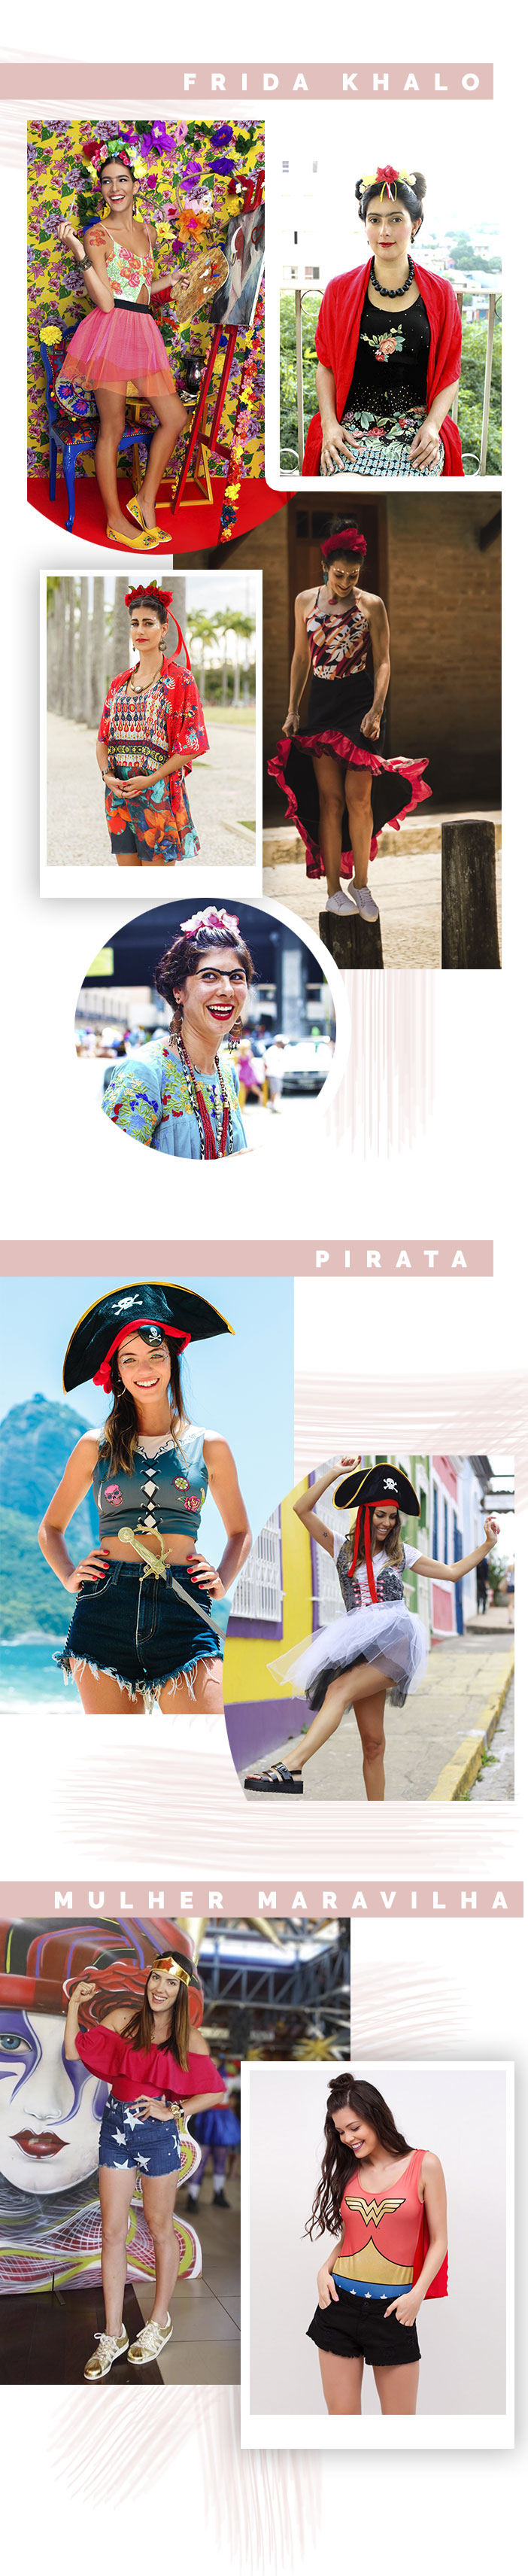 Fantasias fáceis para o carnaval 2018 - Frida Khalo, Pirata e Mulher Maravilha